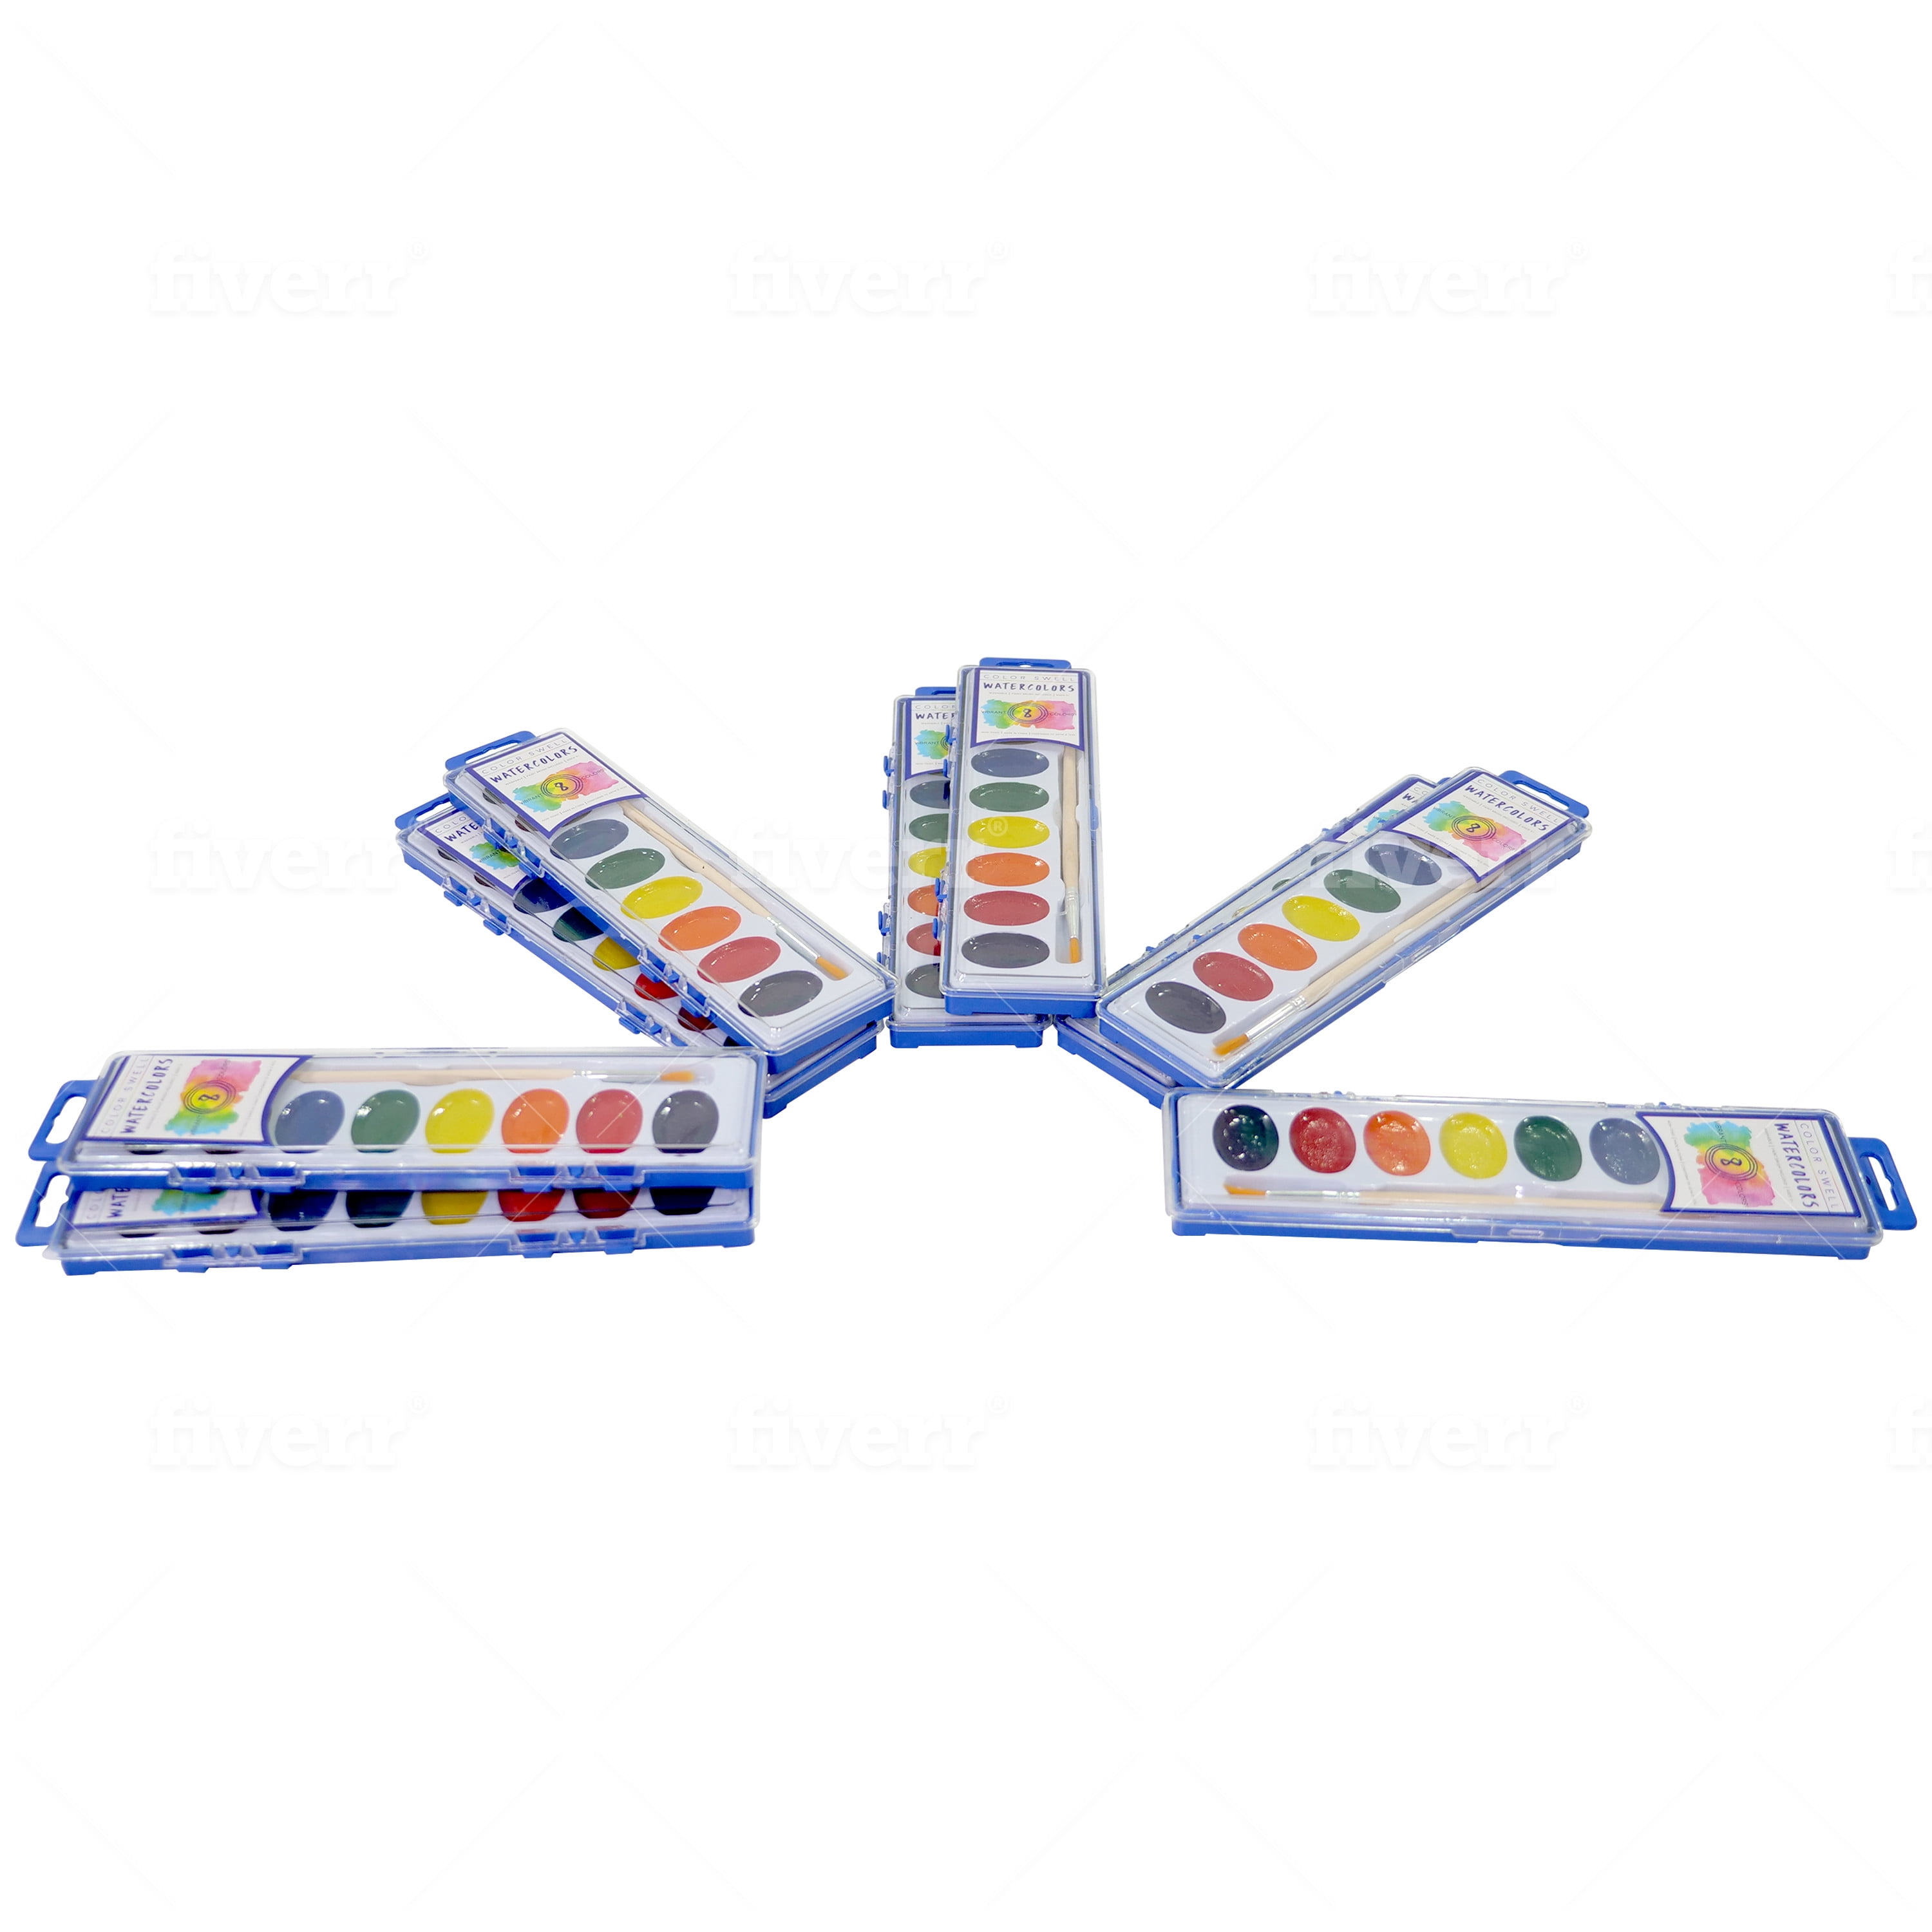 Color Swell Bulk Watercolor Paints (6 Packs, 8 Colors/Pack), 1 - Kroger